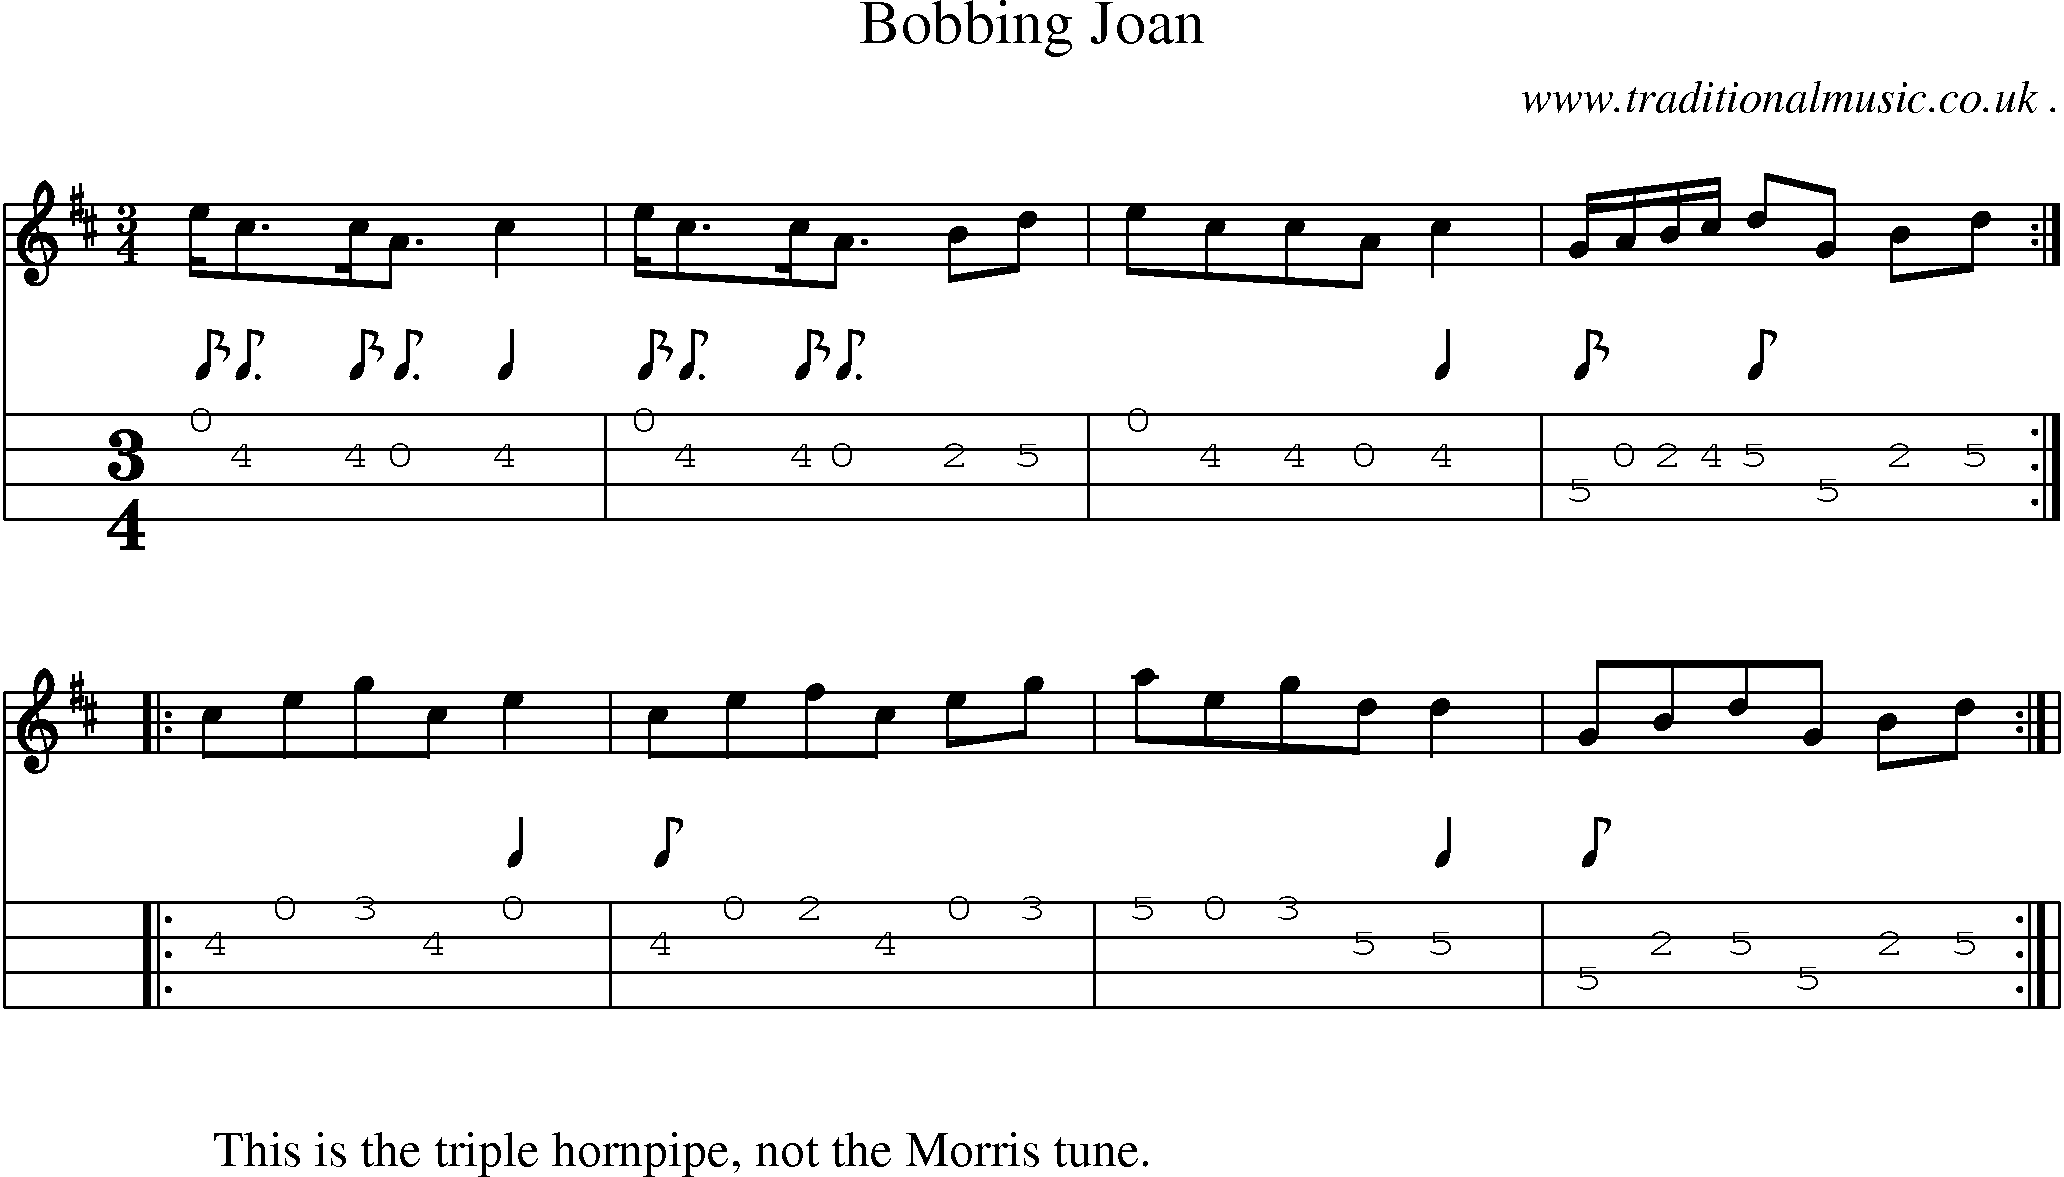 Sheet-Music and Mandolin Tabs for Bobbing Joan